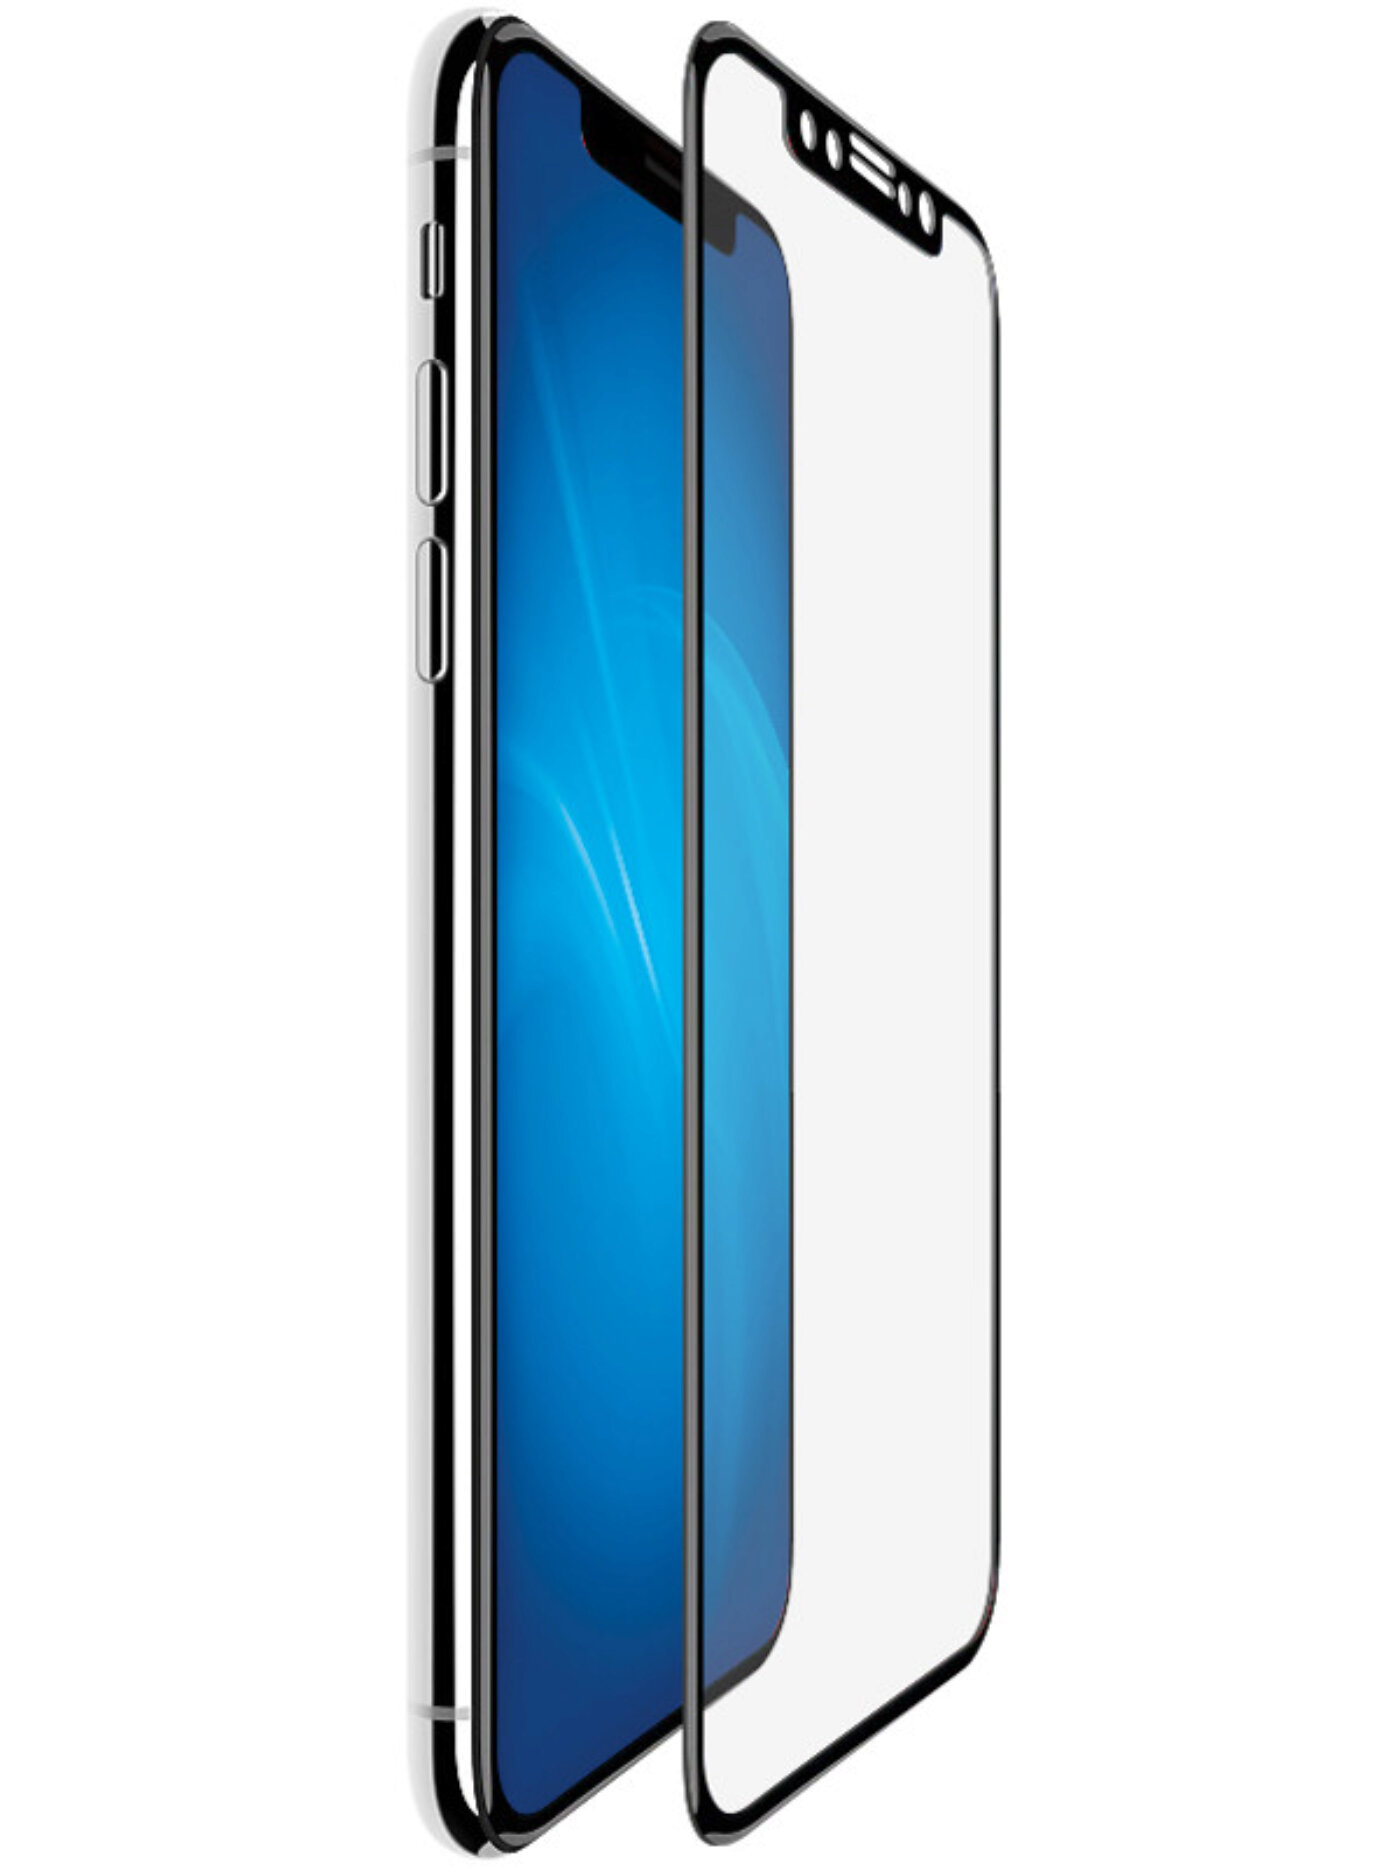 Защитное стекло iphone 12 pro. Защитное стекло XS Max. Защитное стекло для iphone 12. Защитное стекло для iphone 11. Стекло на айфон 11 Pro/XS.